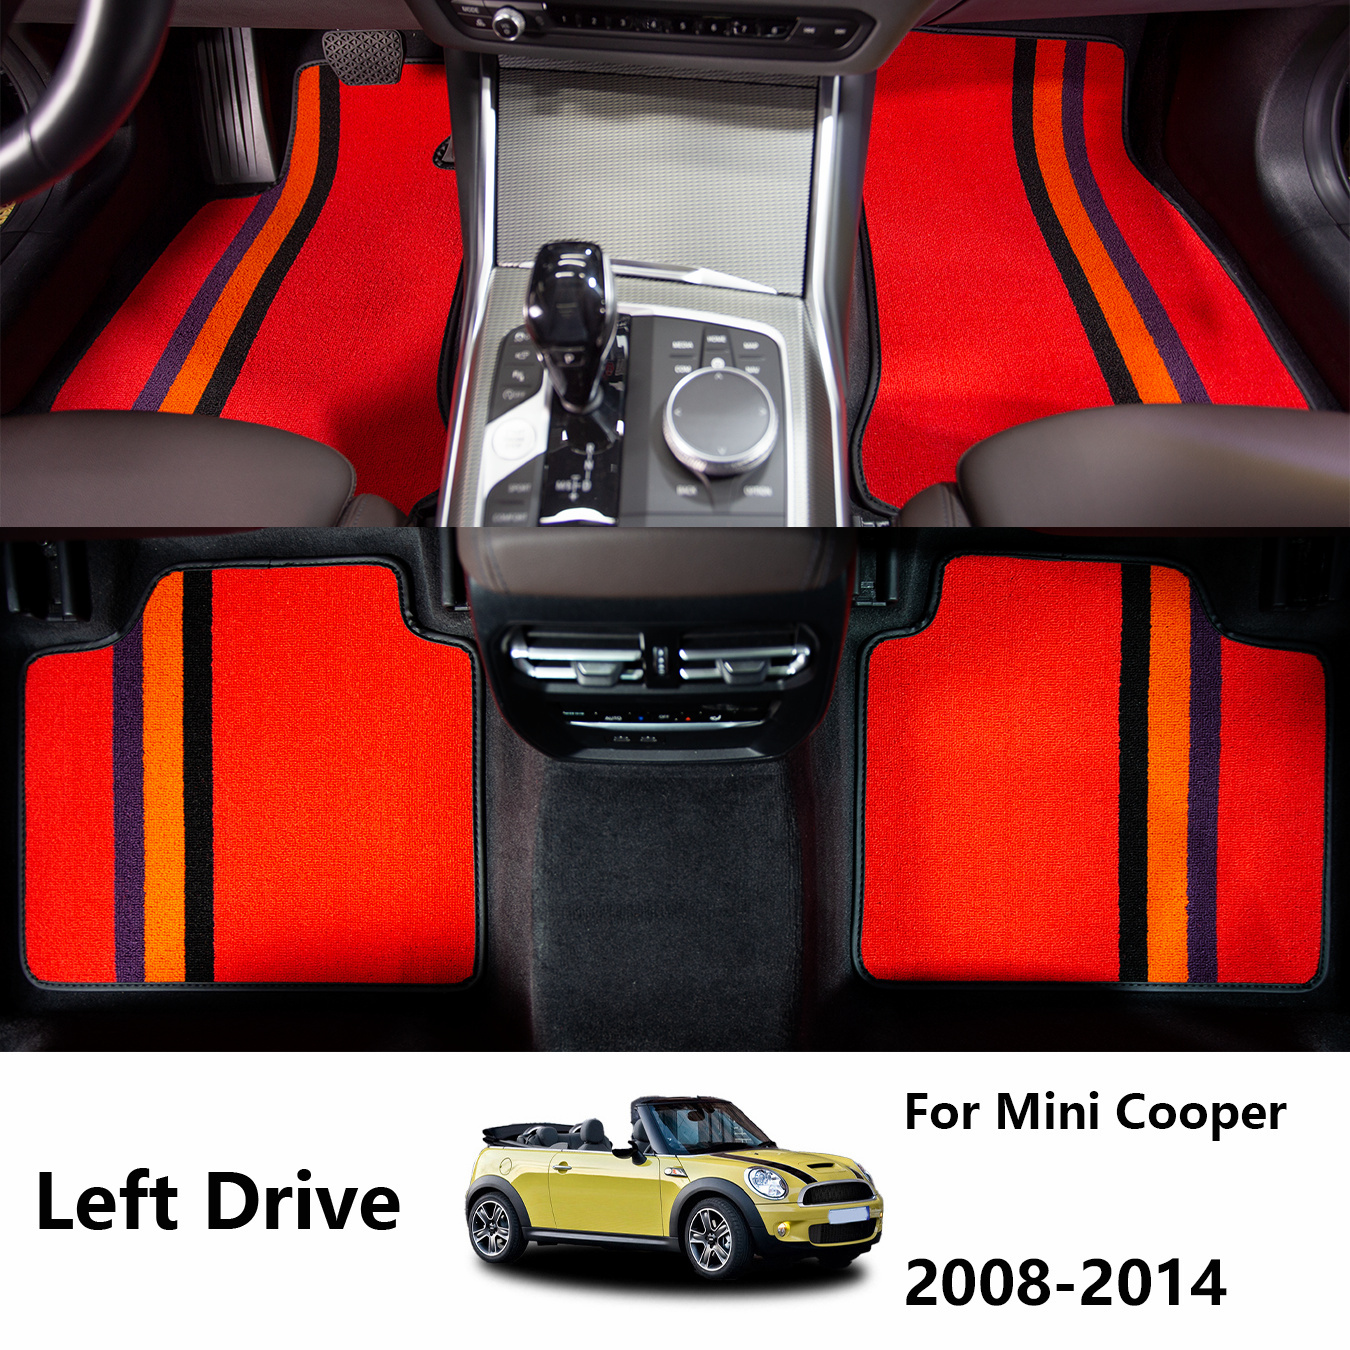 For Cooper Accessories Silicone Car Model Button Cover - Temu